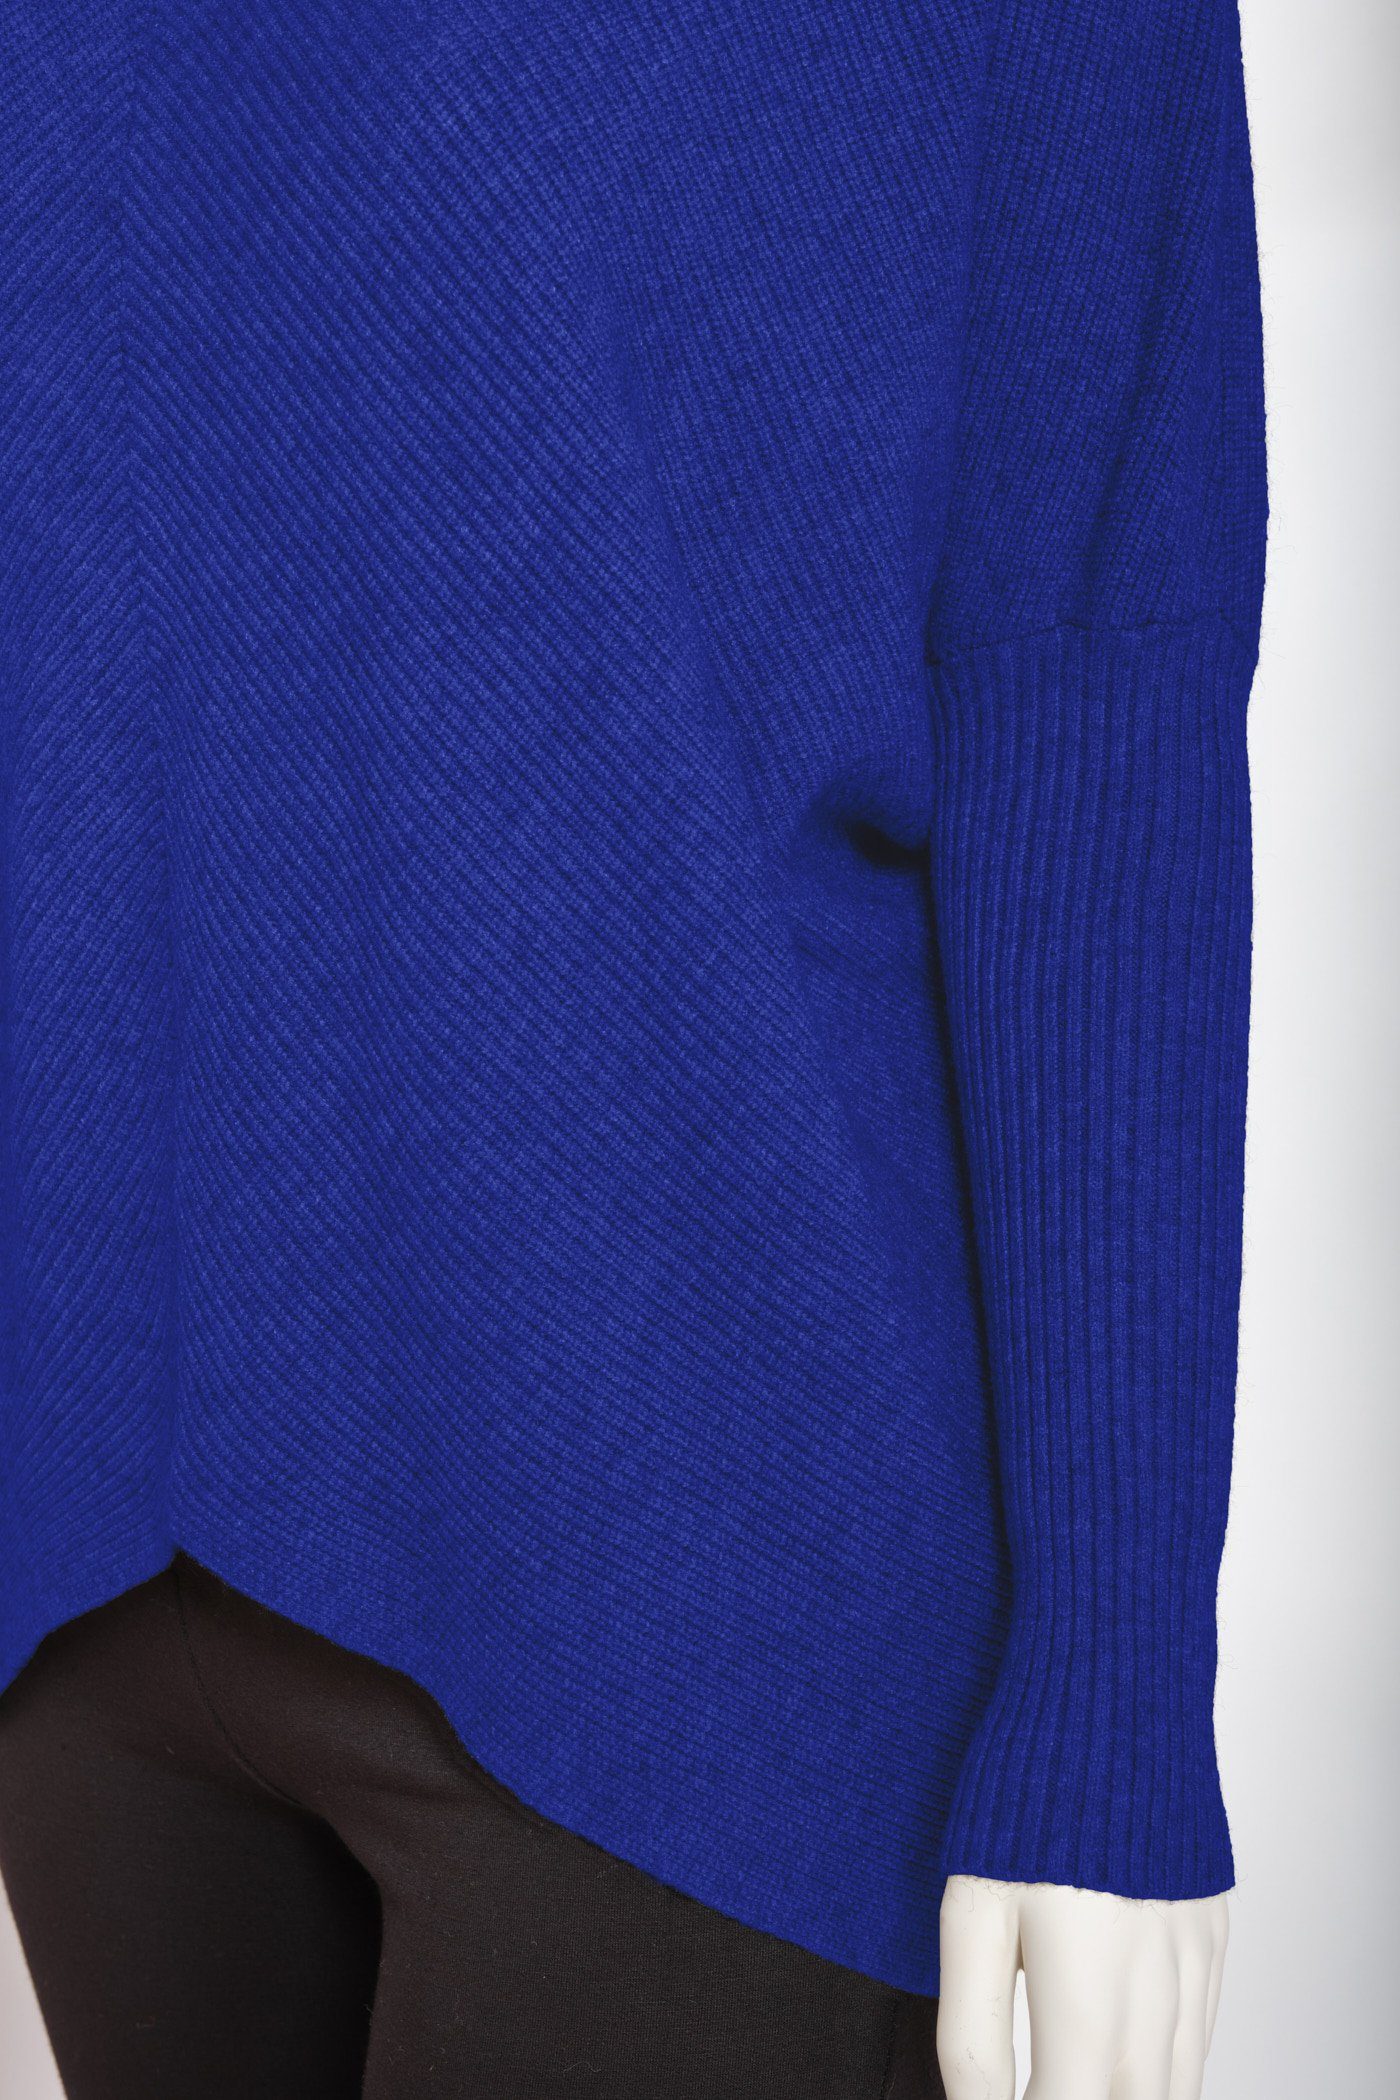 PEKIVESSA Strickpullover Oversized Rippstrick Pullover (1-tlg) royalblau länger Damen hinten Fledermausärme